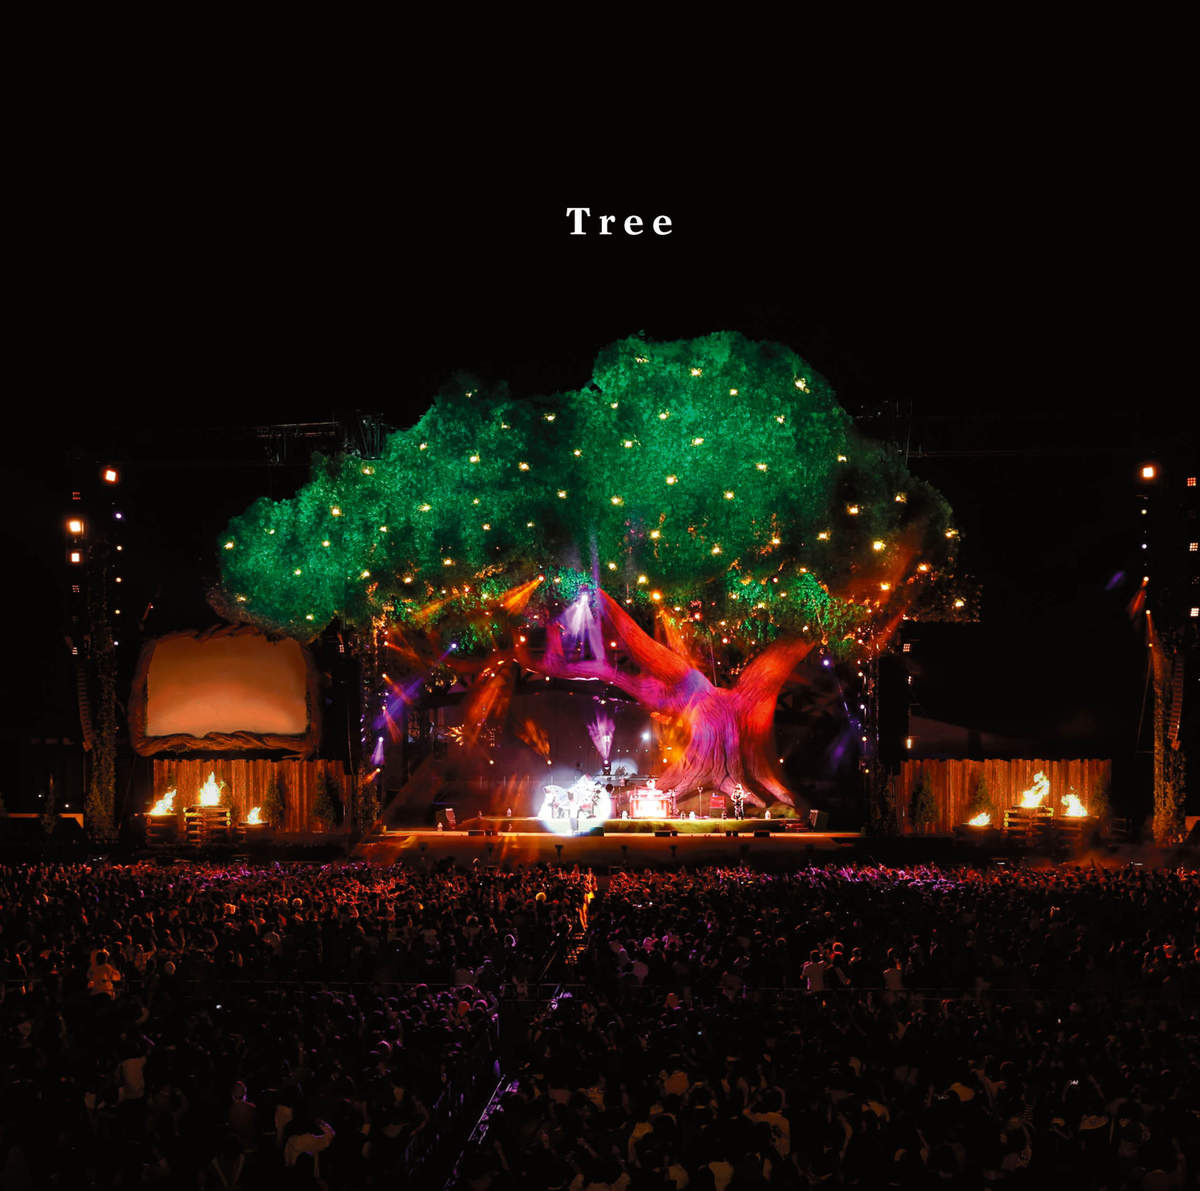 TREE(世界末日第2張錄音室專輯)